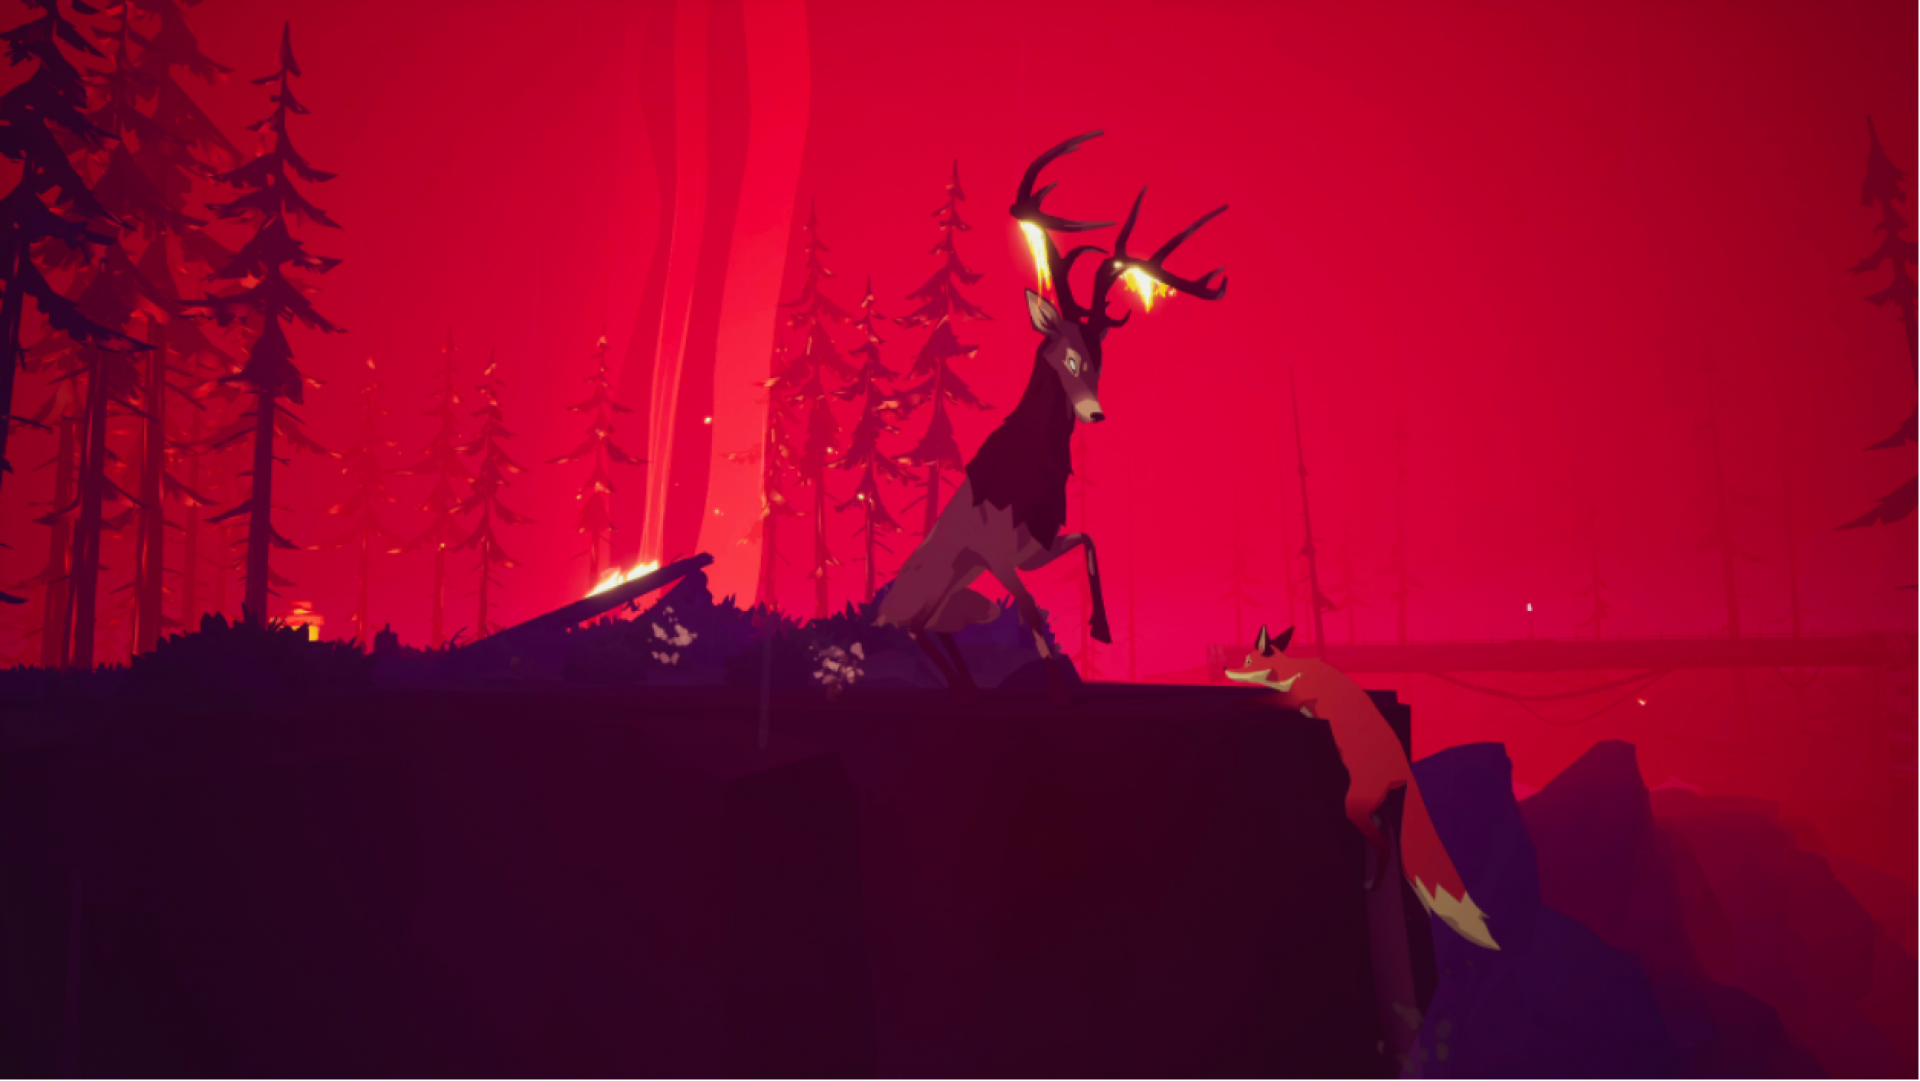 Background is a deep crimson sky where a deer bucks at a mother fox climbing up a cliffside.